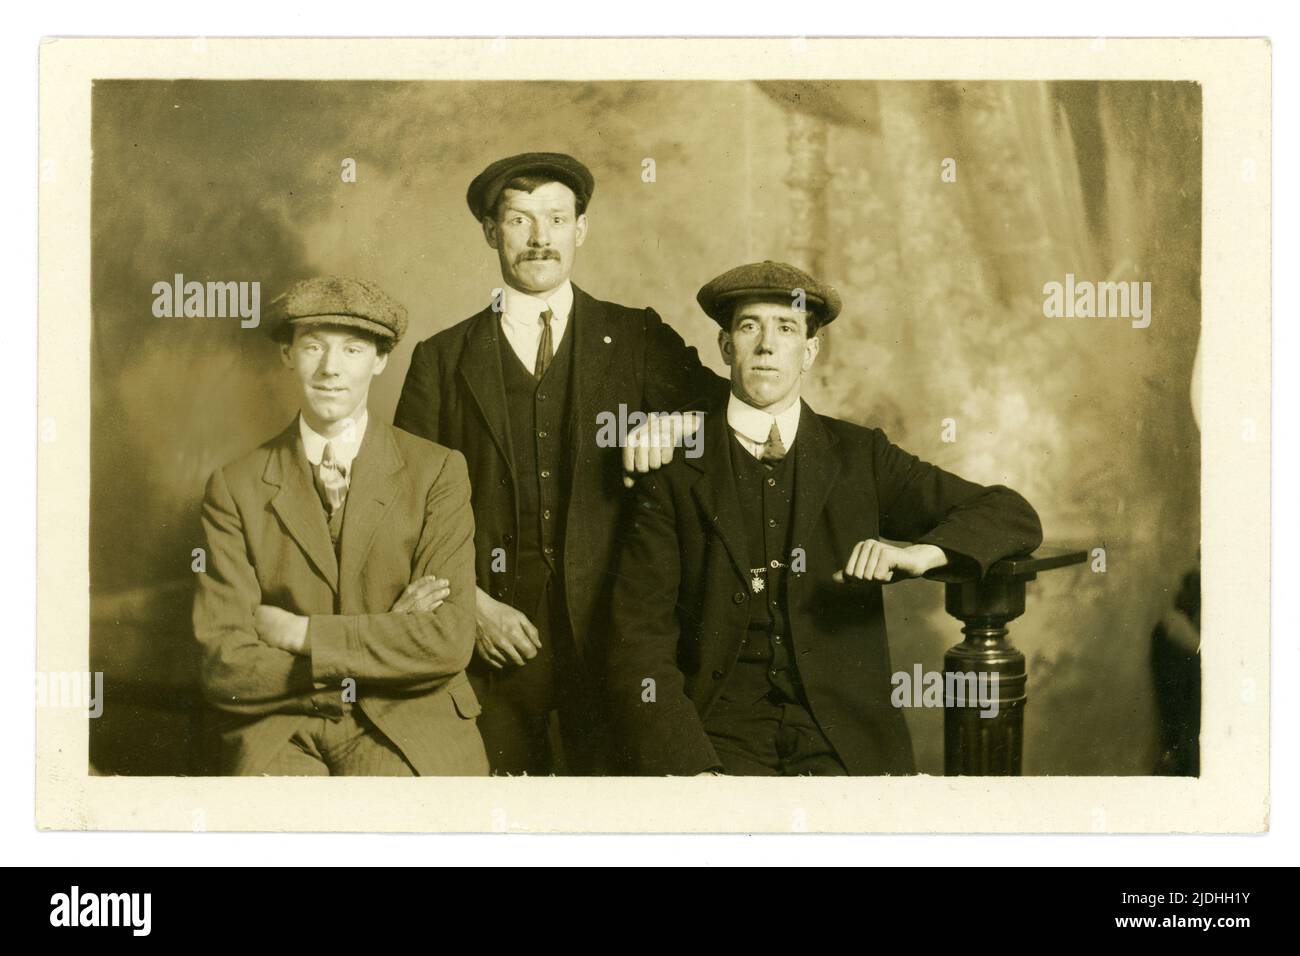 Originale e chiaro primi del 1900 'studio ritratto gruppo di 3 uomini classe operaia che indossano cappellini piatti, possibilmente una fotografia di WW1 enlistment degli amici, studio di fotografo, Cuttriss, Neville Street, Newcastle-on-Tyne, Regno Unito circa 1914-1919, Foto Stock